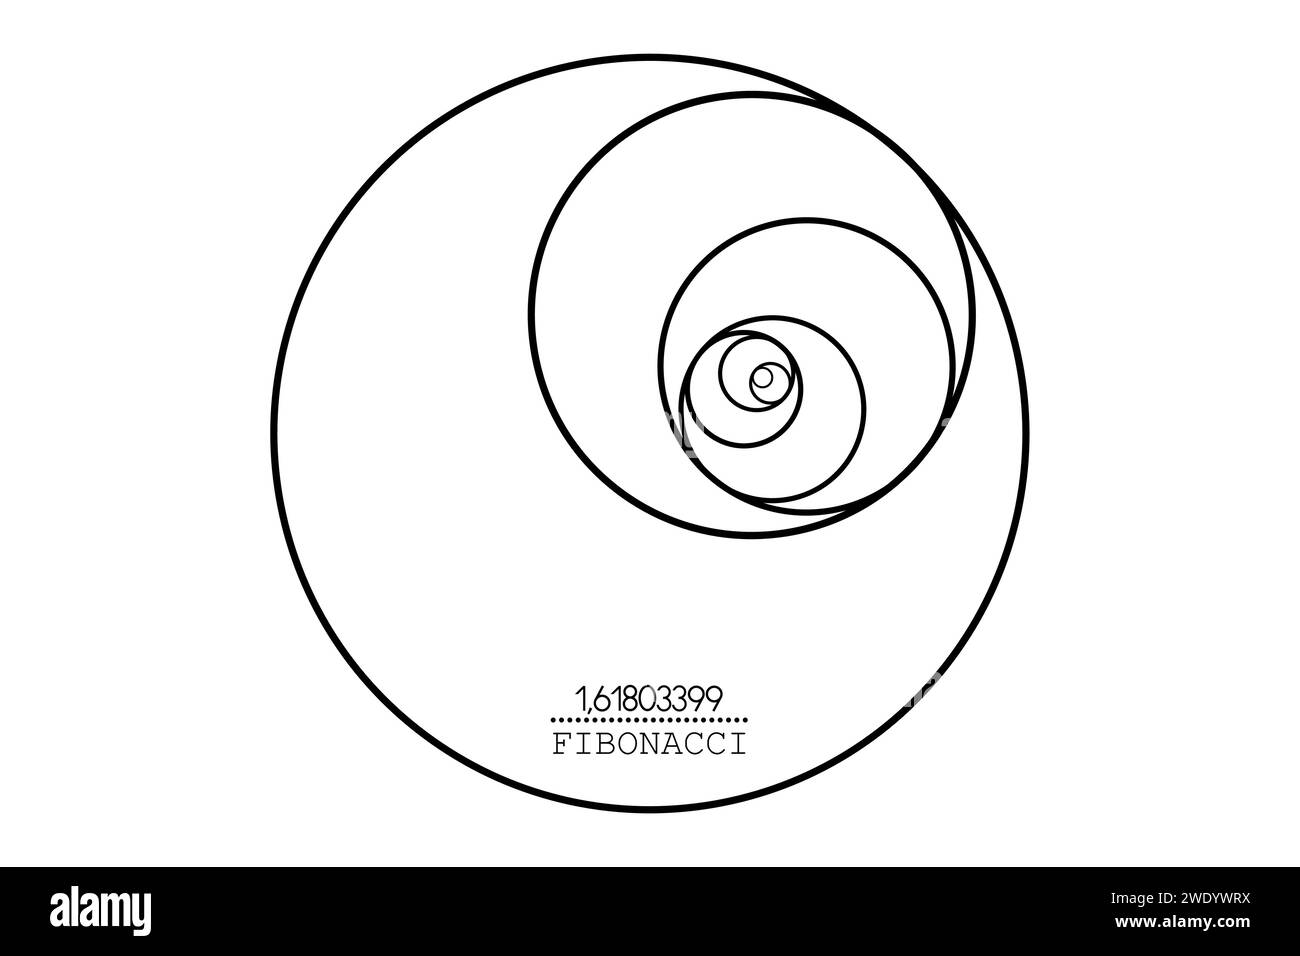 Fibonacci-Sequenzkreis. Goldener Schnitt. Geometrische Formen Spirale. Kreise im goldenen Verhältnis. Futuristisches, minimalistisches Modedesign. Logo. Vektor Stock Vektor